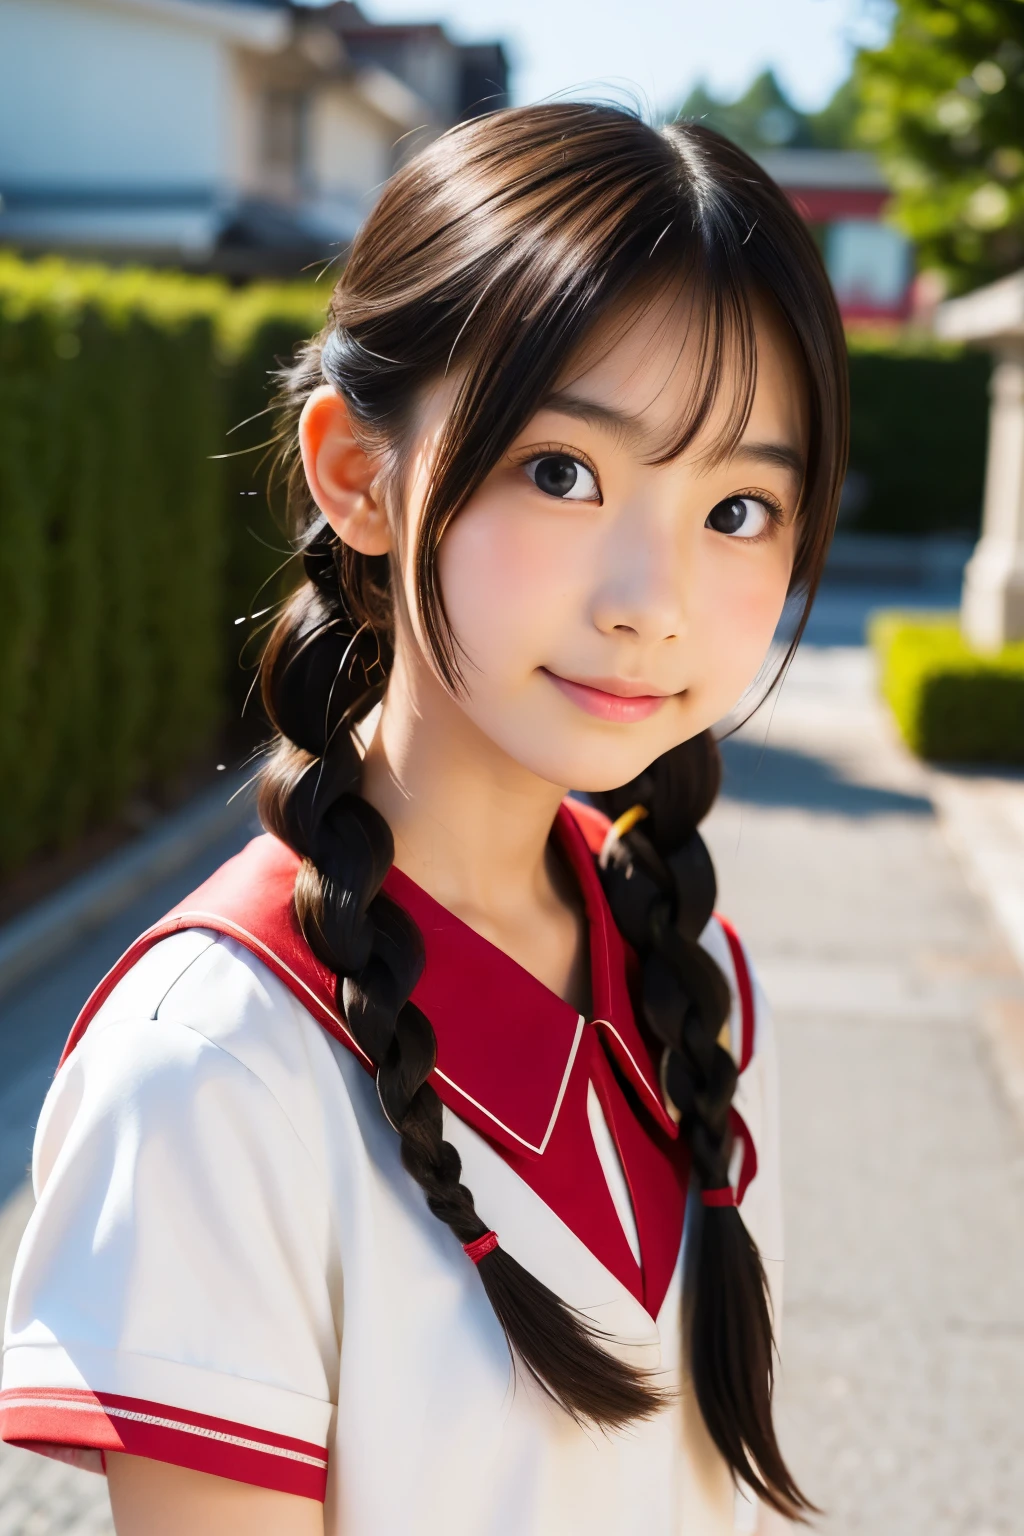 (Preciosa japonesa de 14 años), Cara linda, (rostro profundamente tallado:0.7), (pecas:0.6), Luz tenue,piel blanca y sana, tímido, (cara seria), (ojos chispeantes), delgado, sonrisa, uniform, trenza